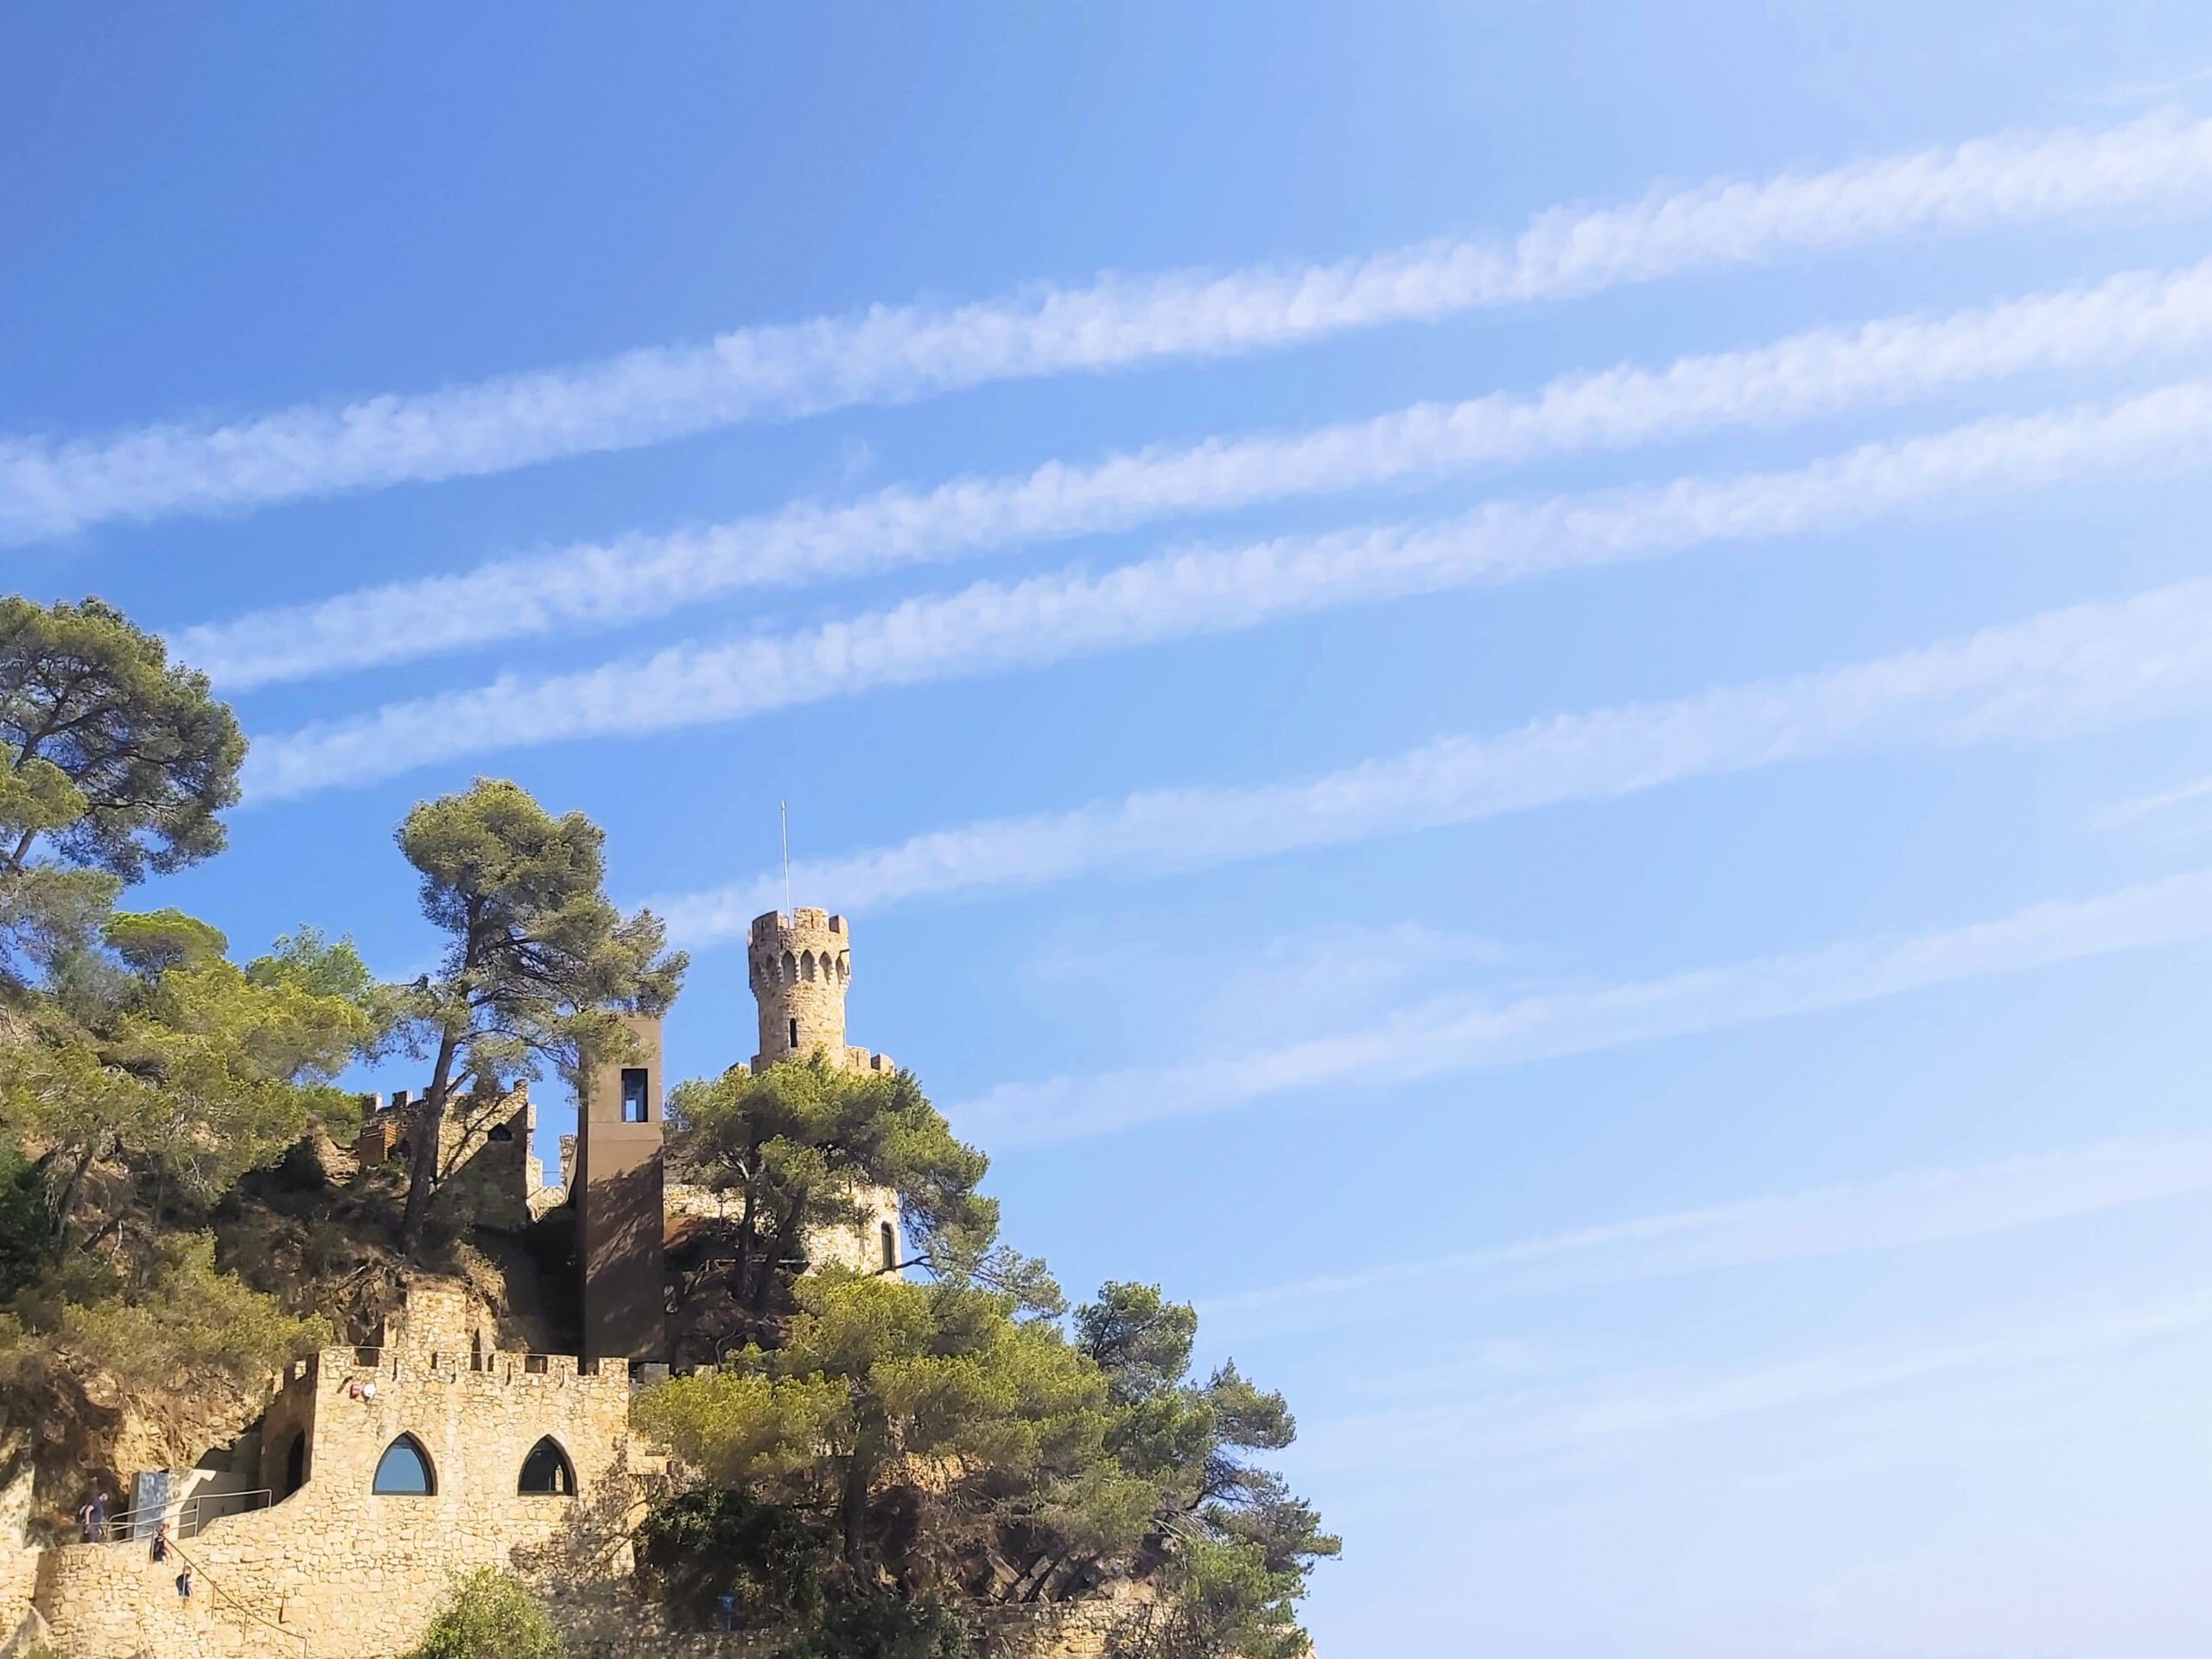 The castle on the cliff in Lloret de Mar, Spain